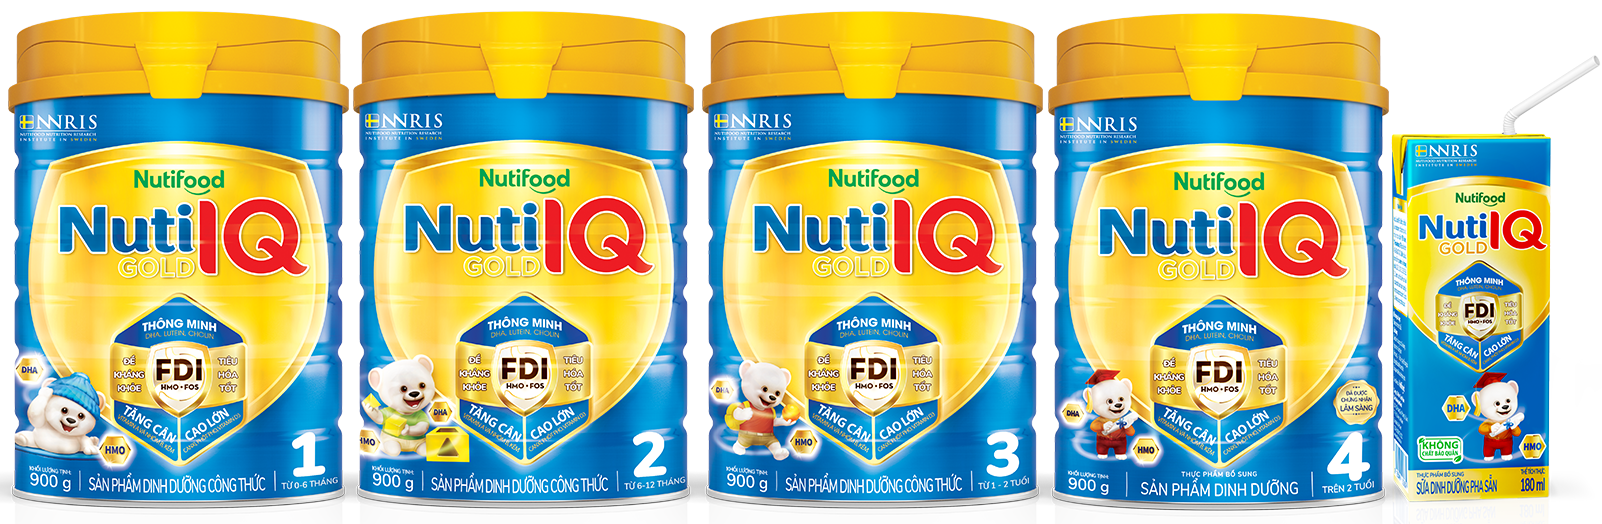 Sữa Nuti IQ Gold ảnh 2